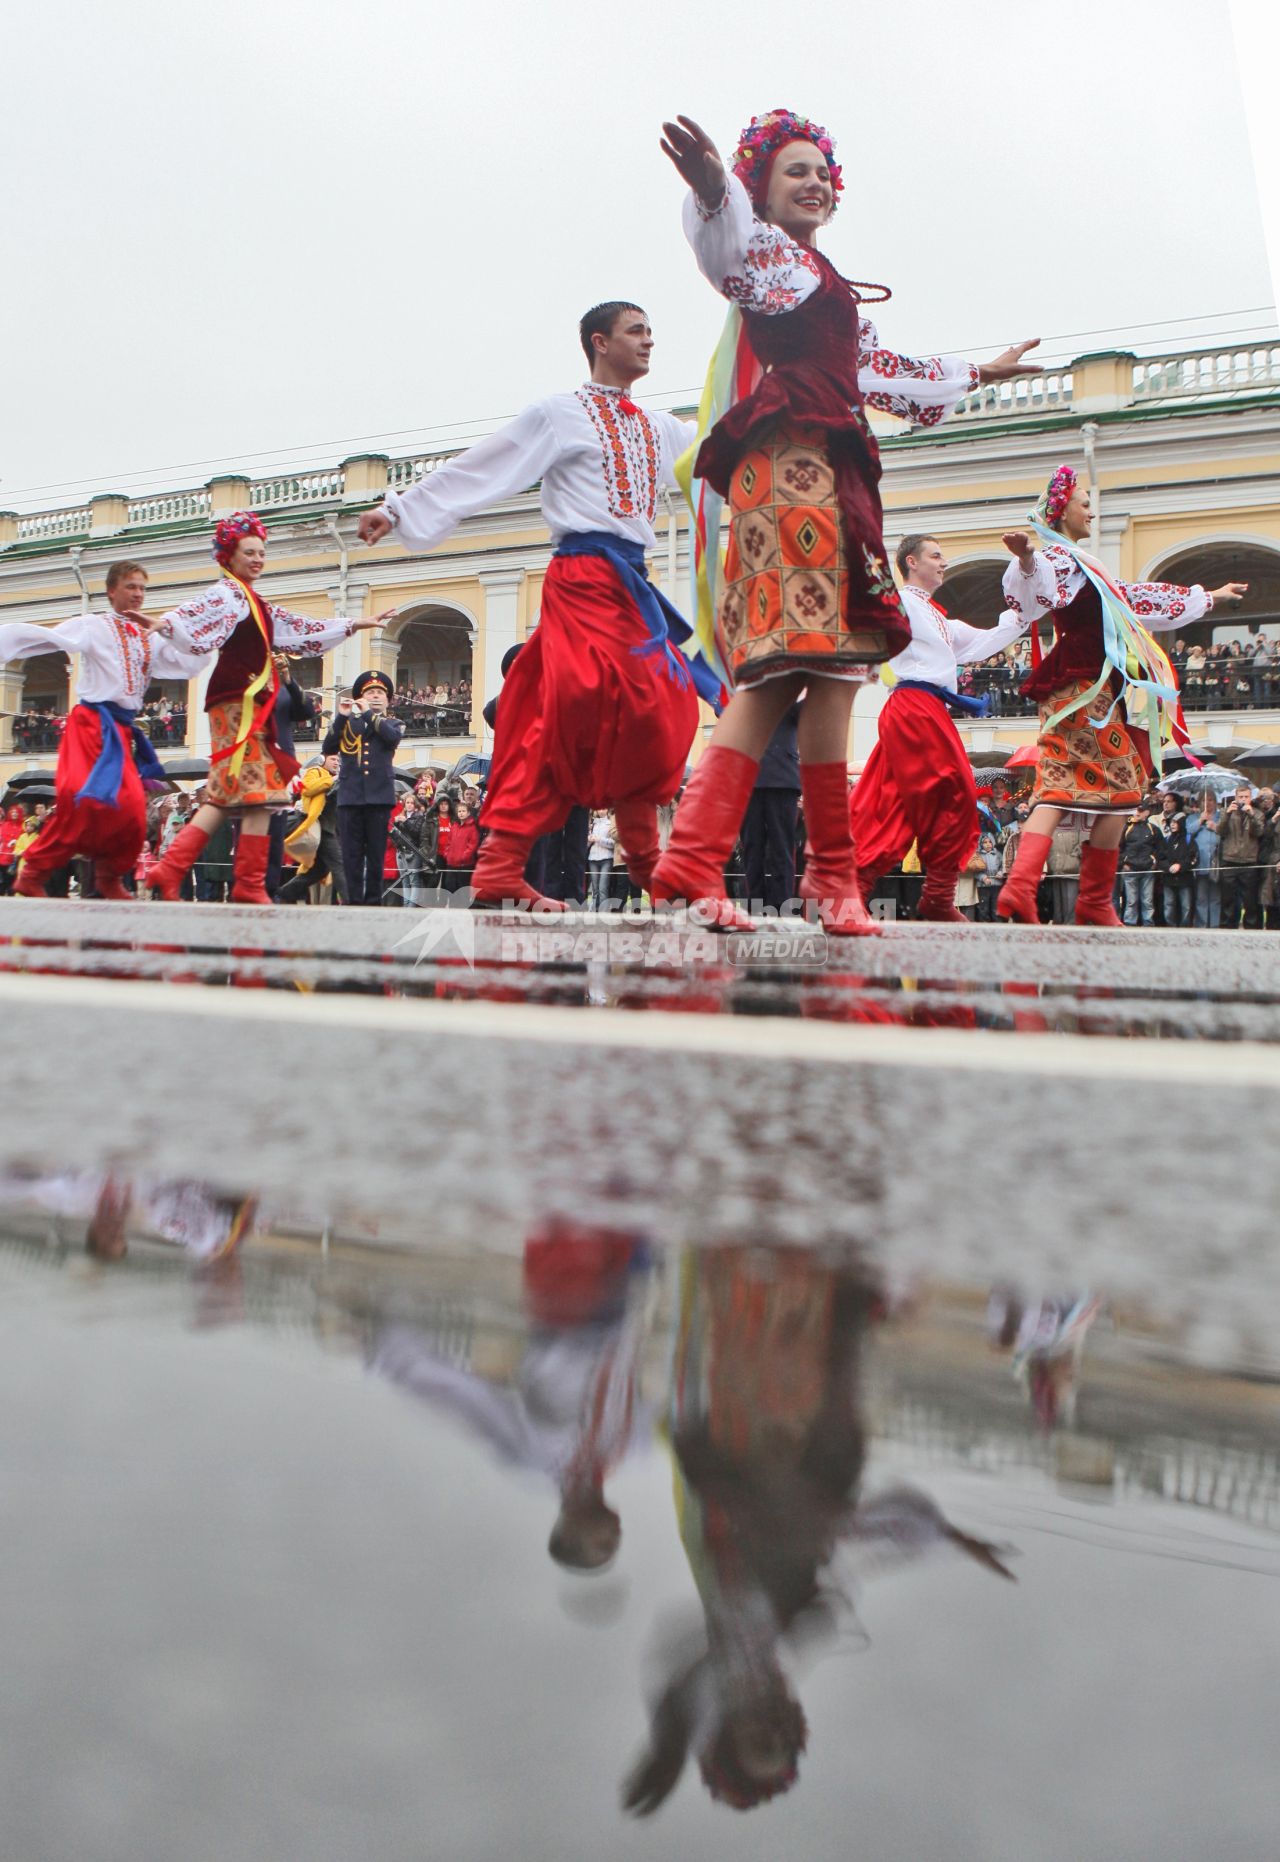 Празднование дня города (308 лет) в Санкт-Петербурге. На снимке: артисты наряженные в национальные украинские костюмы. 28 мая 2011 года.